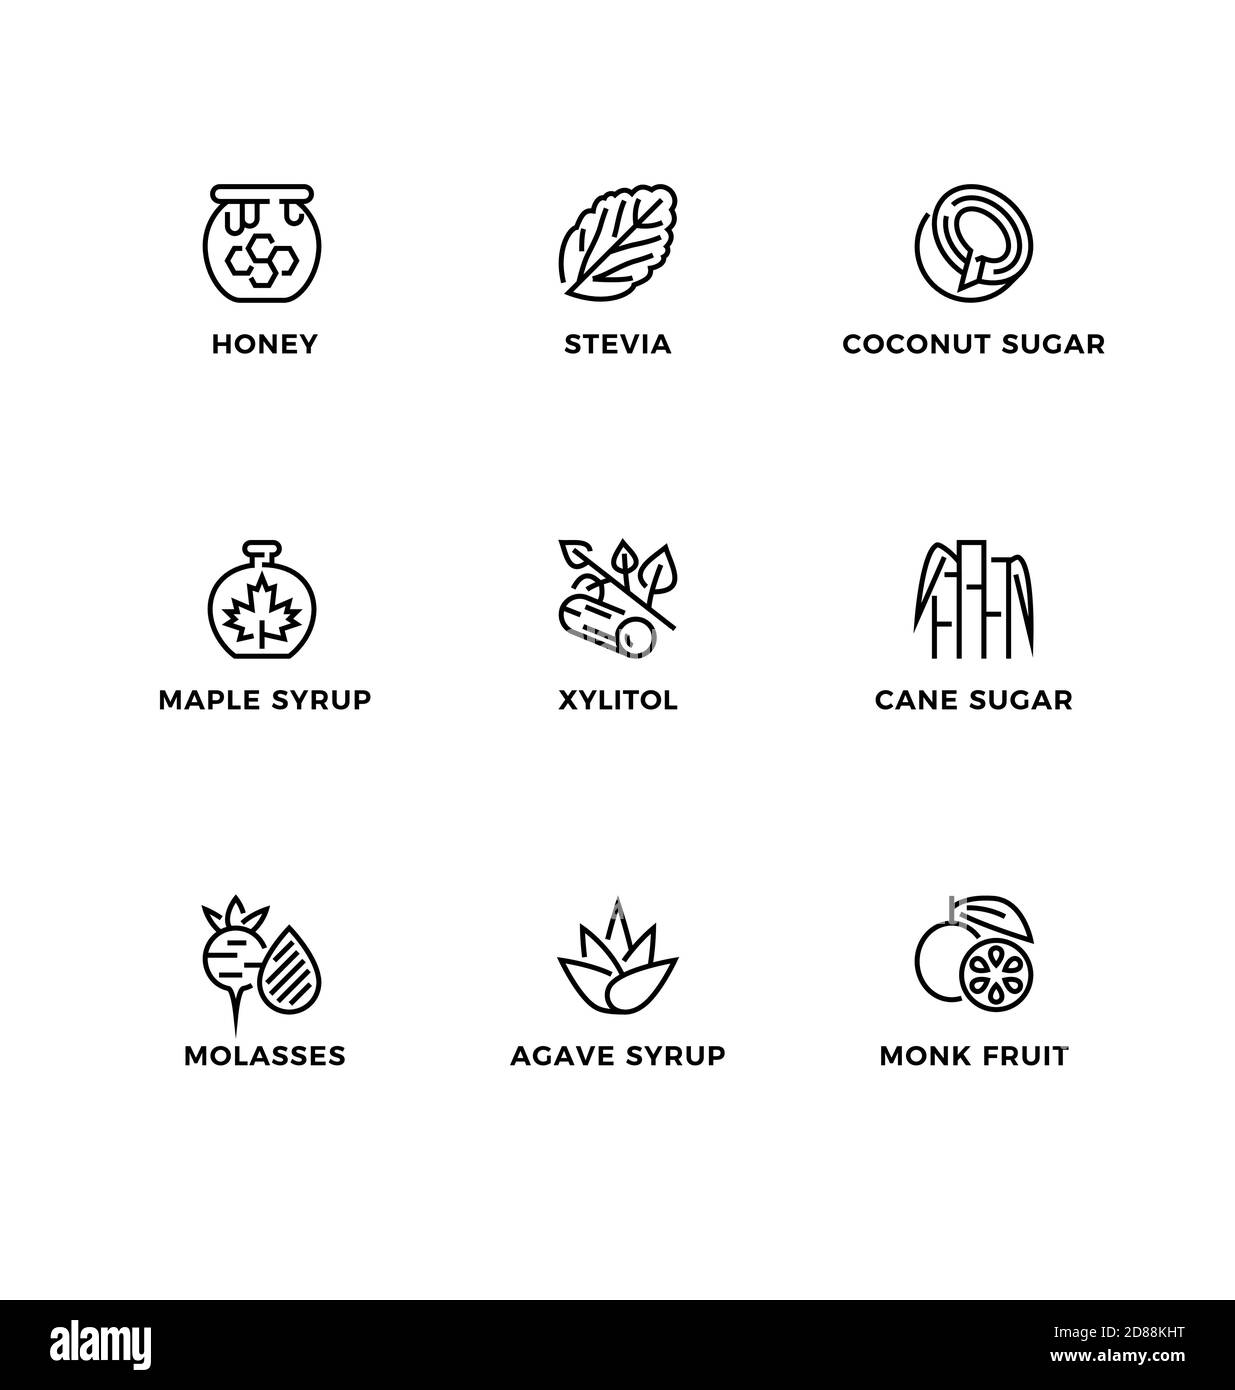 Vektor-Set von Design-Elementen, Logo-Design-Vorlage, Symbole und Abzeichen für Zucker Alternativen, gesunde Lebensmittel, natürliche Substitute. Zeilensymbol gesetzt, editiertab Stock Vektor